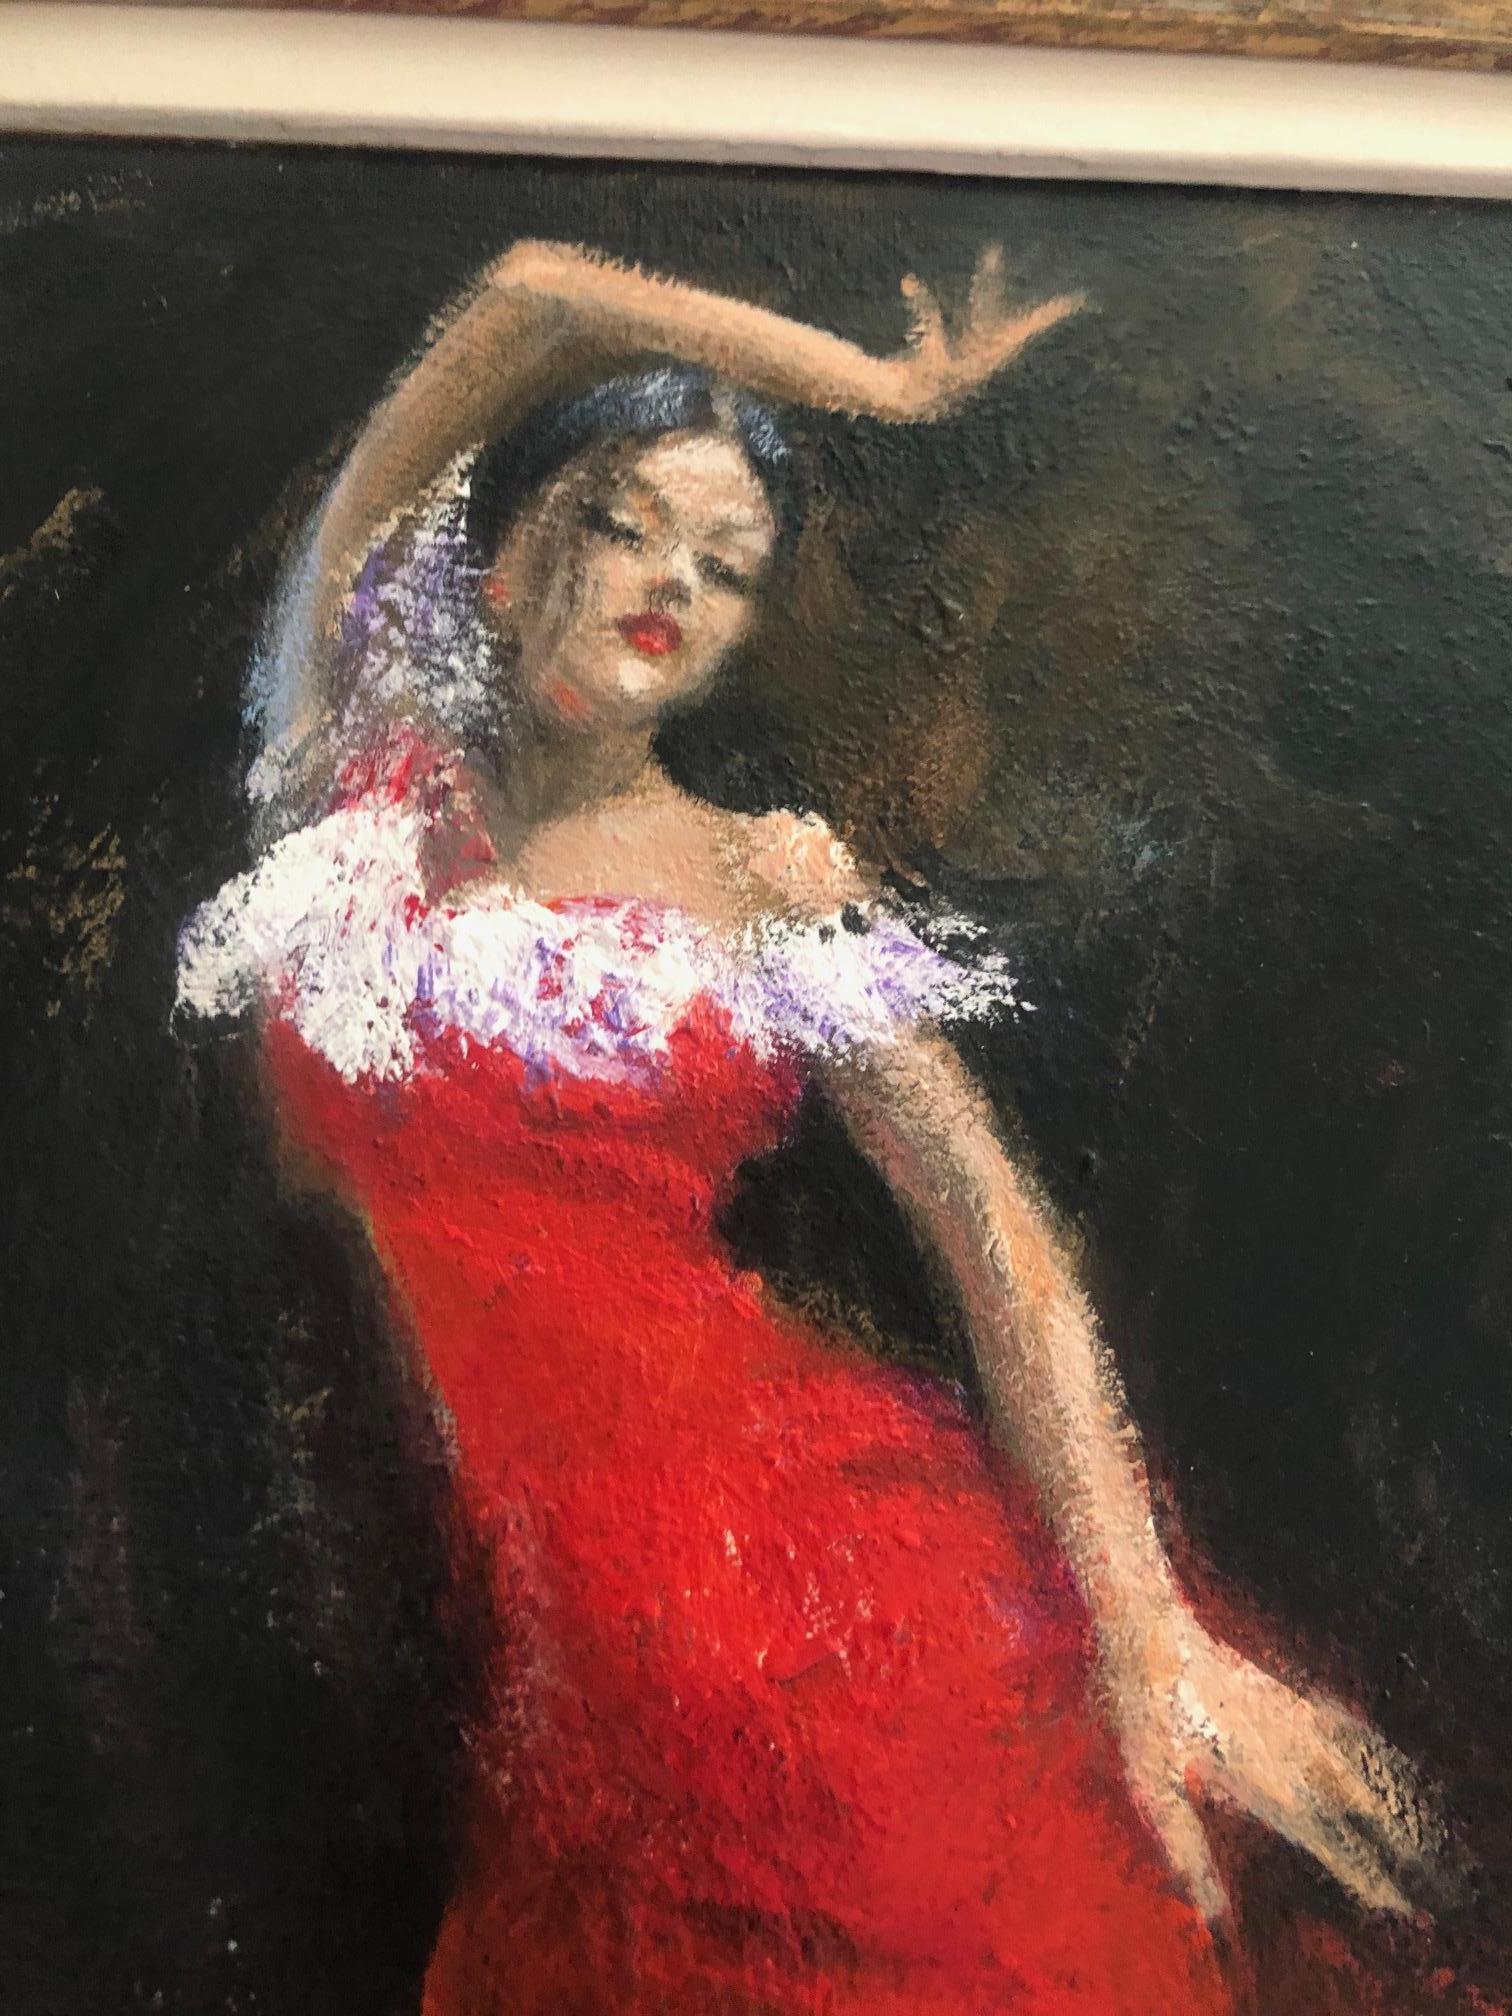 Spanische Flamenco-Tänzerin in rotem Kleid, gerahmtes Ölgemälde – Painting von Rene Jerome Legrand